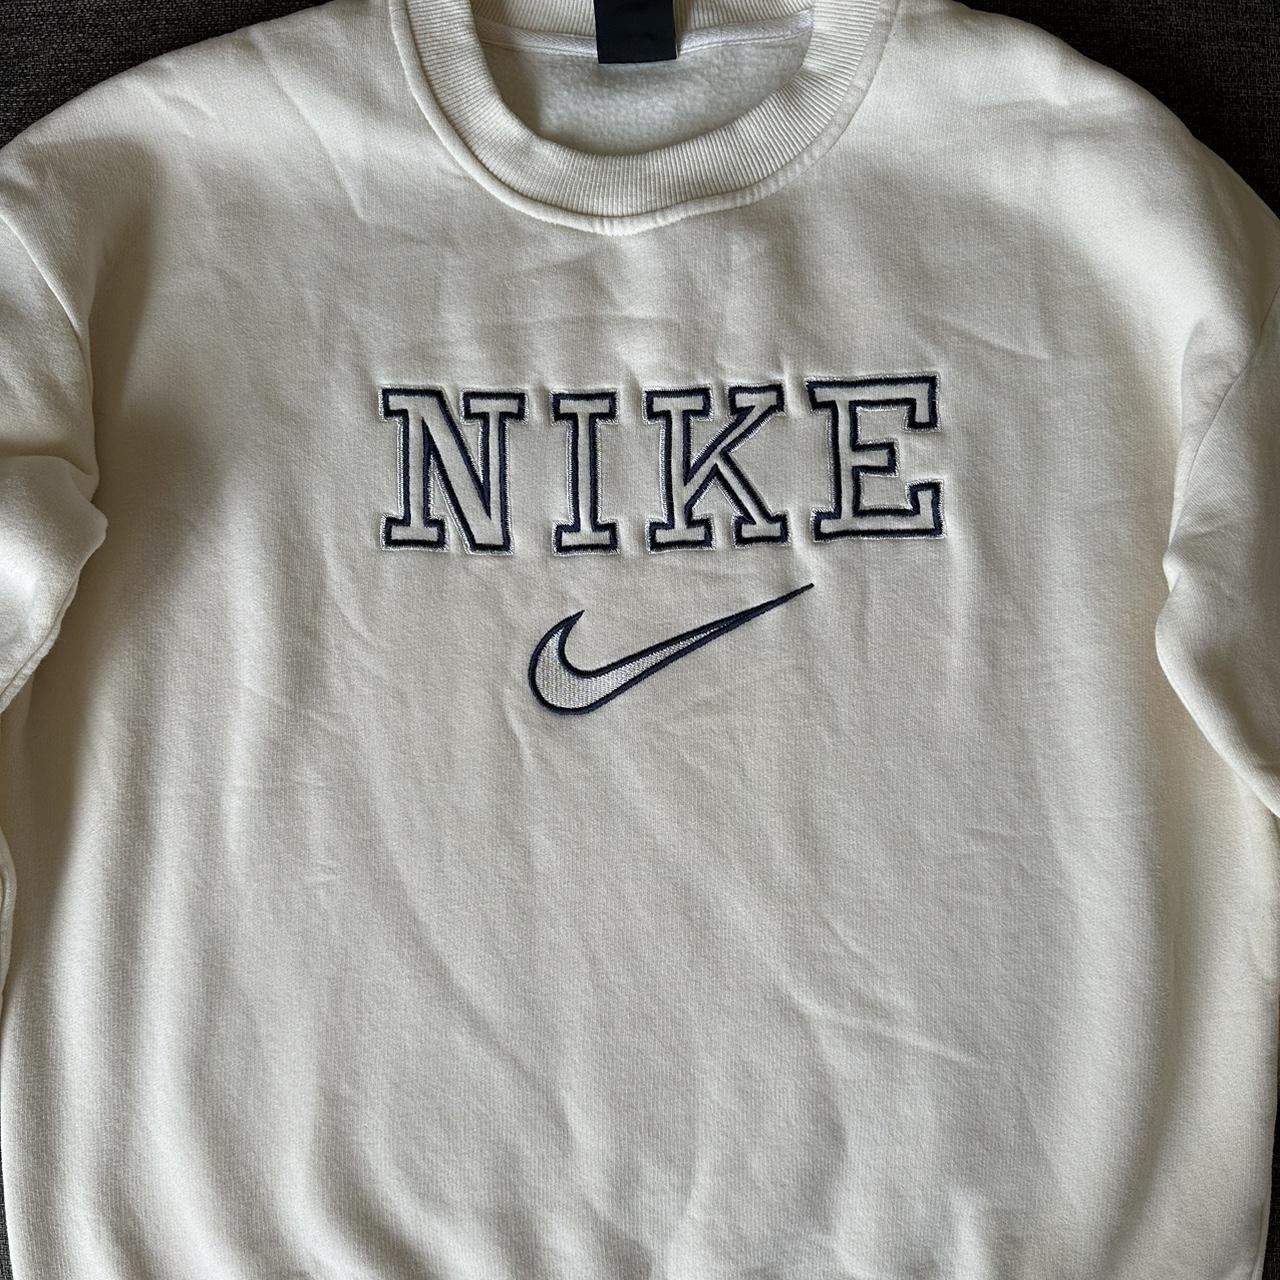 Large cream vintage Nike sweatshirt, fits like a... - Depop